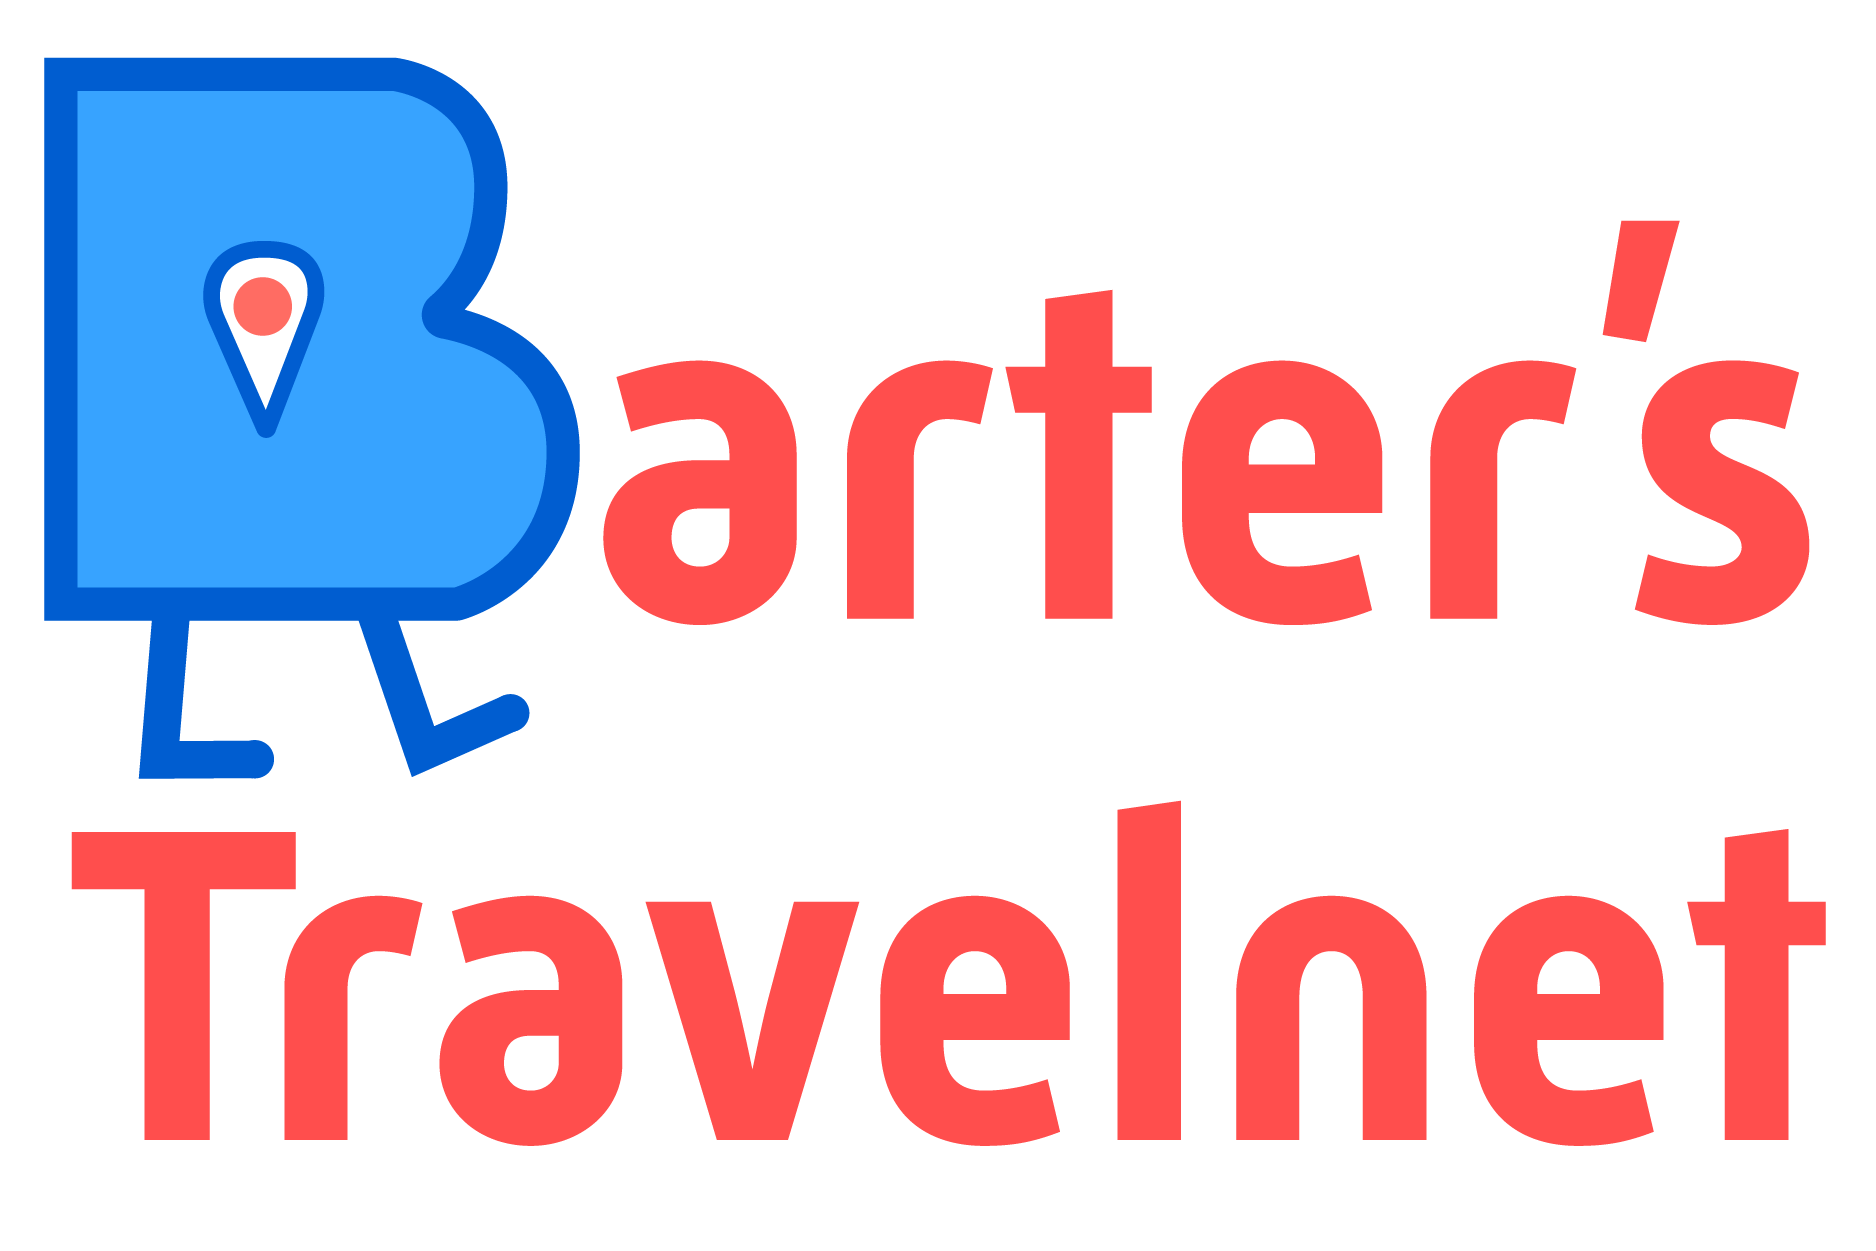 Barter’s Travelnet